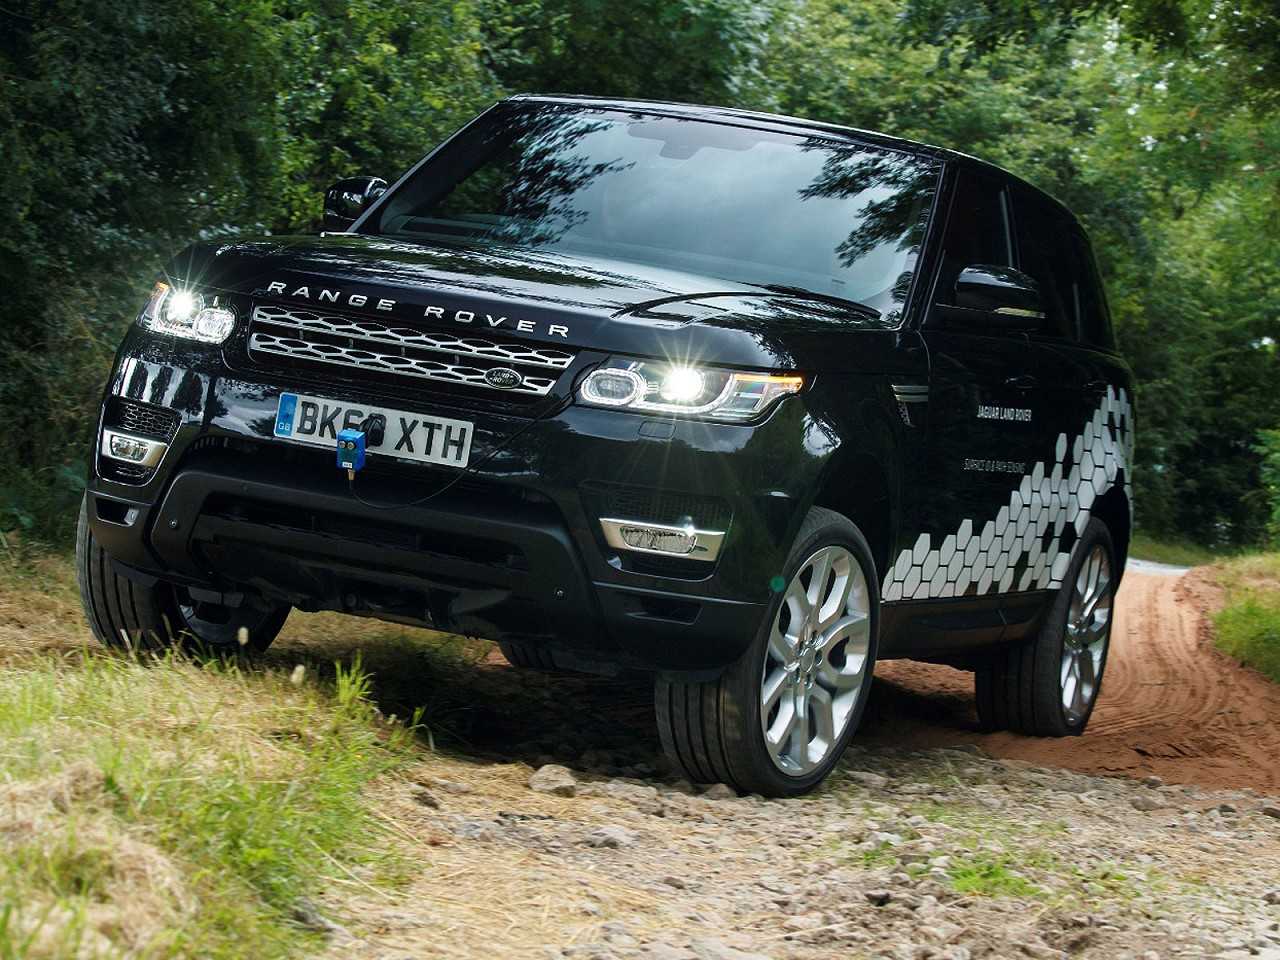 Range Rover autnomo em teste no percurso off-road